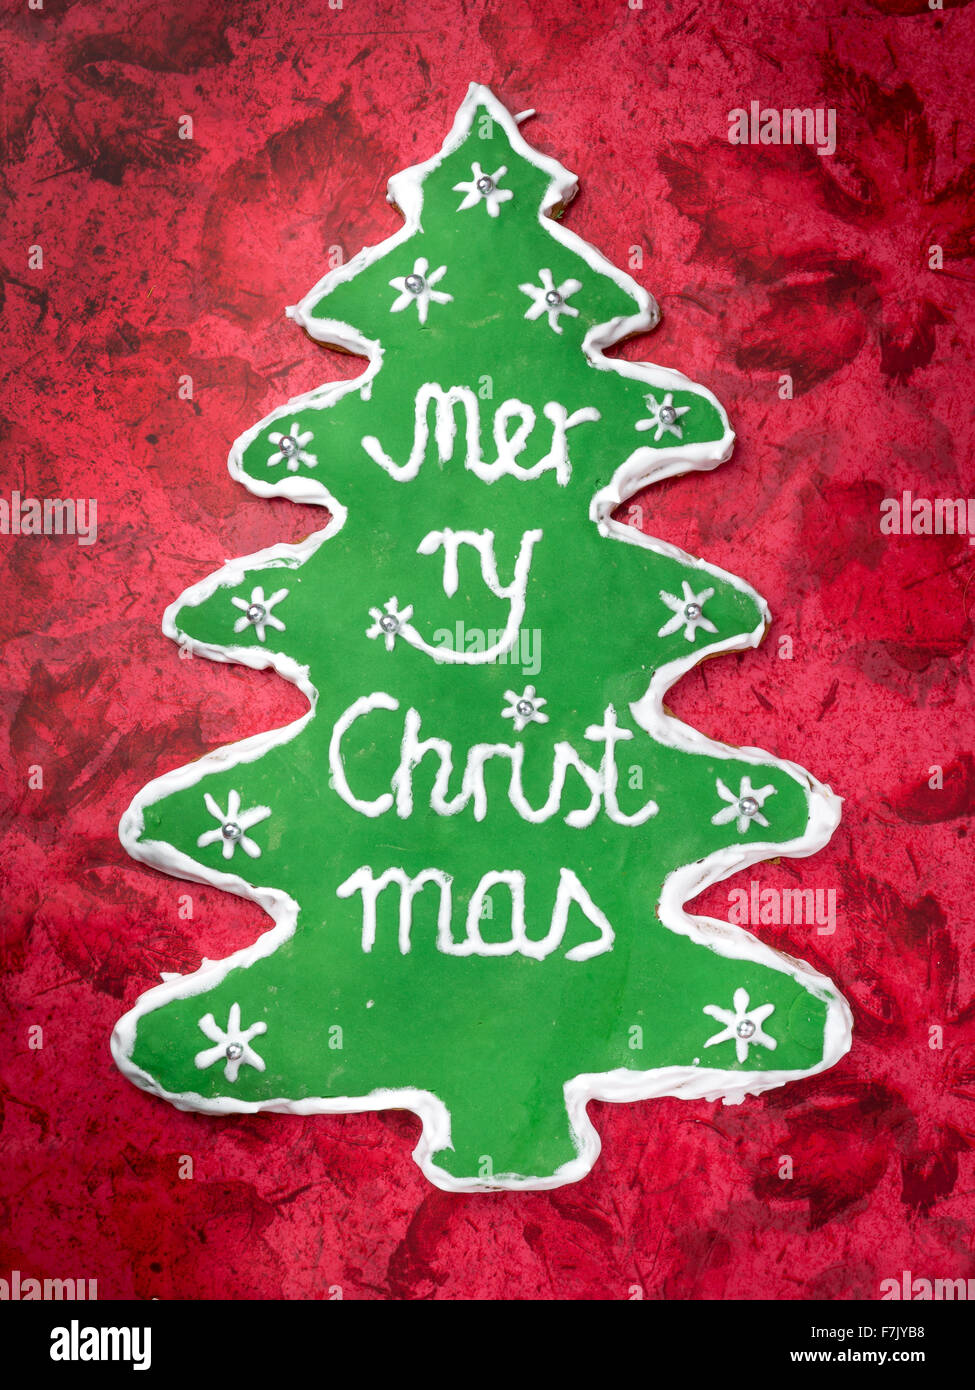 Árbol de navidad con galletas de jengibre como guinda verde y Feliz Navidad escrito sobre fondo rojo. Foto de stock